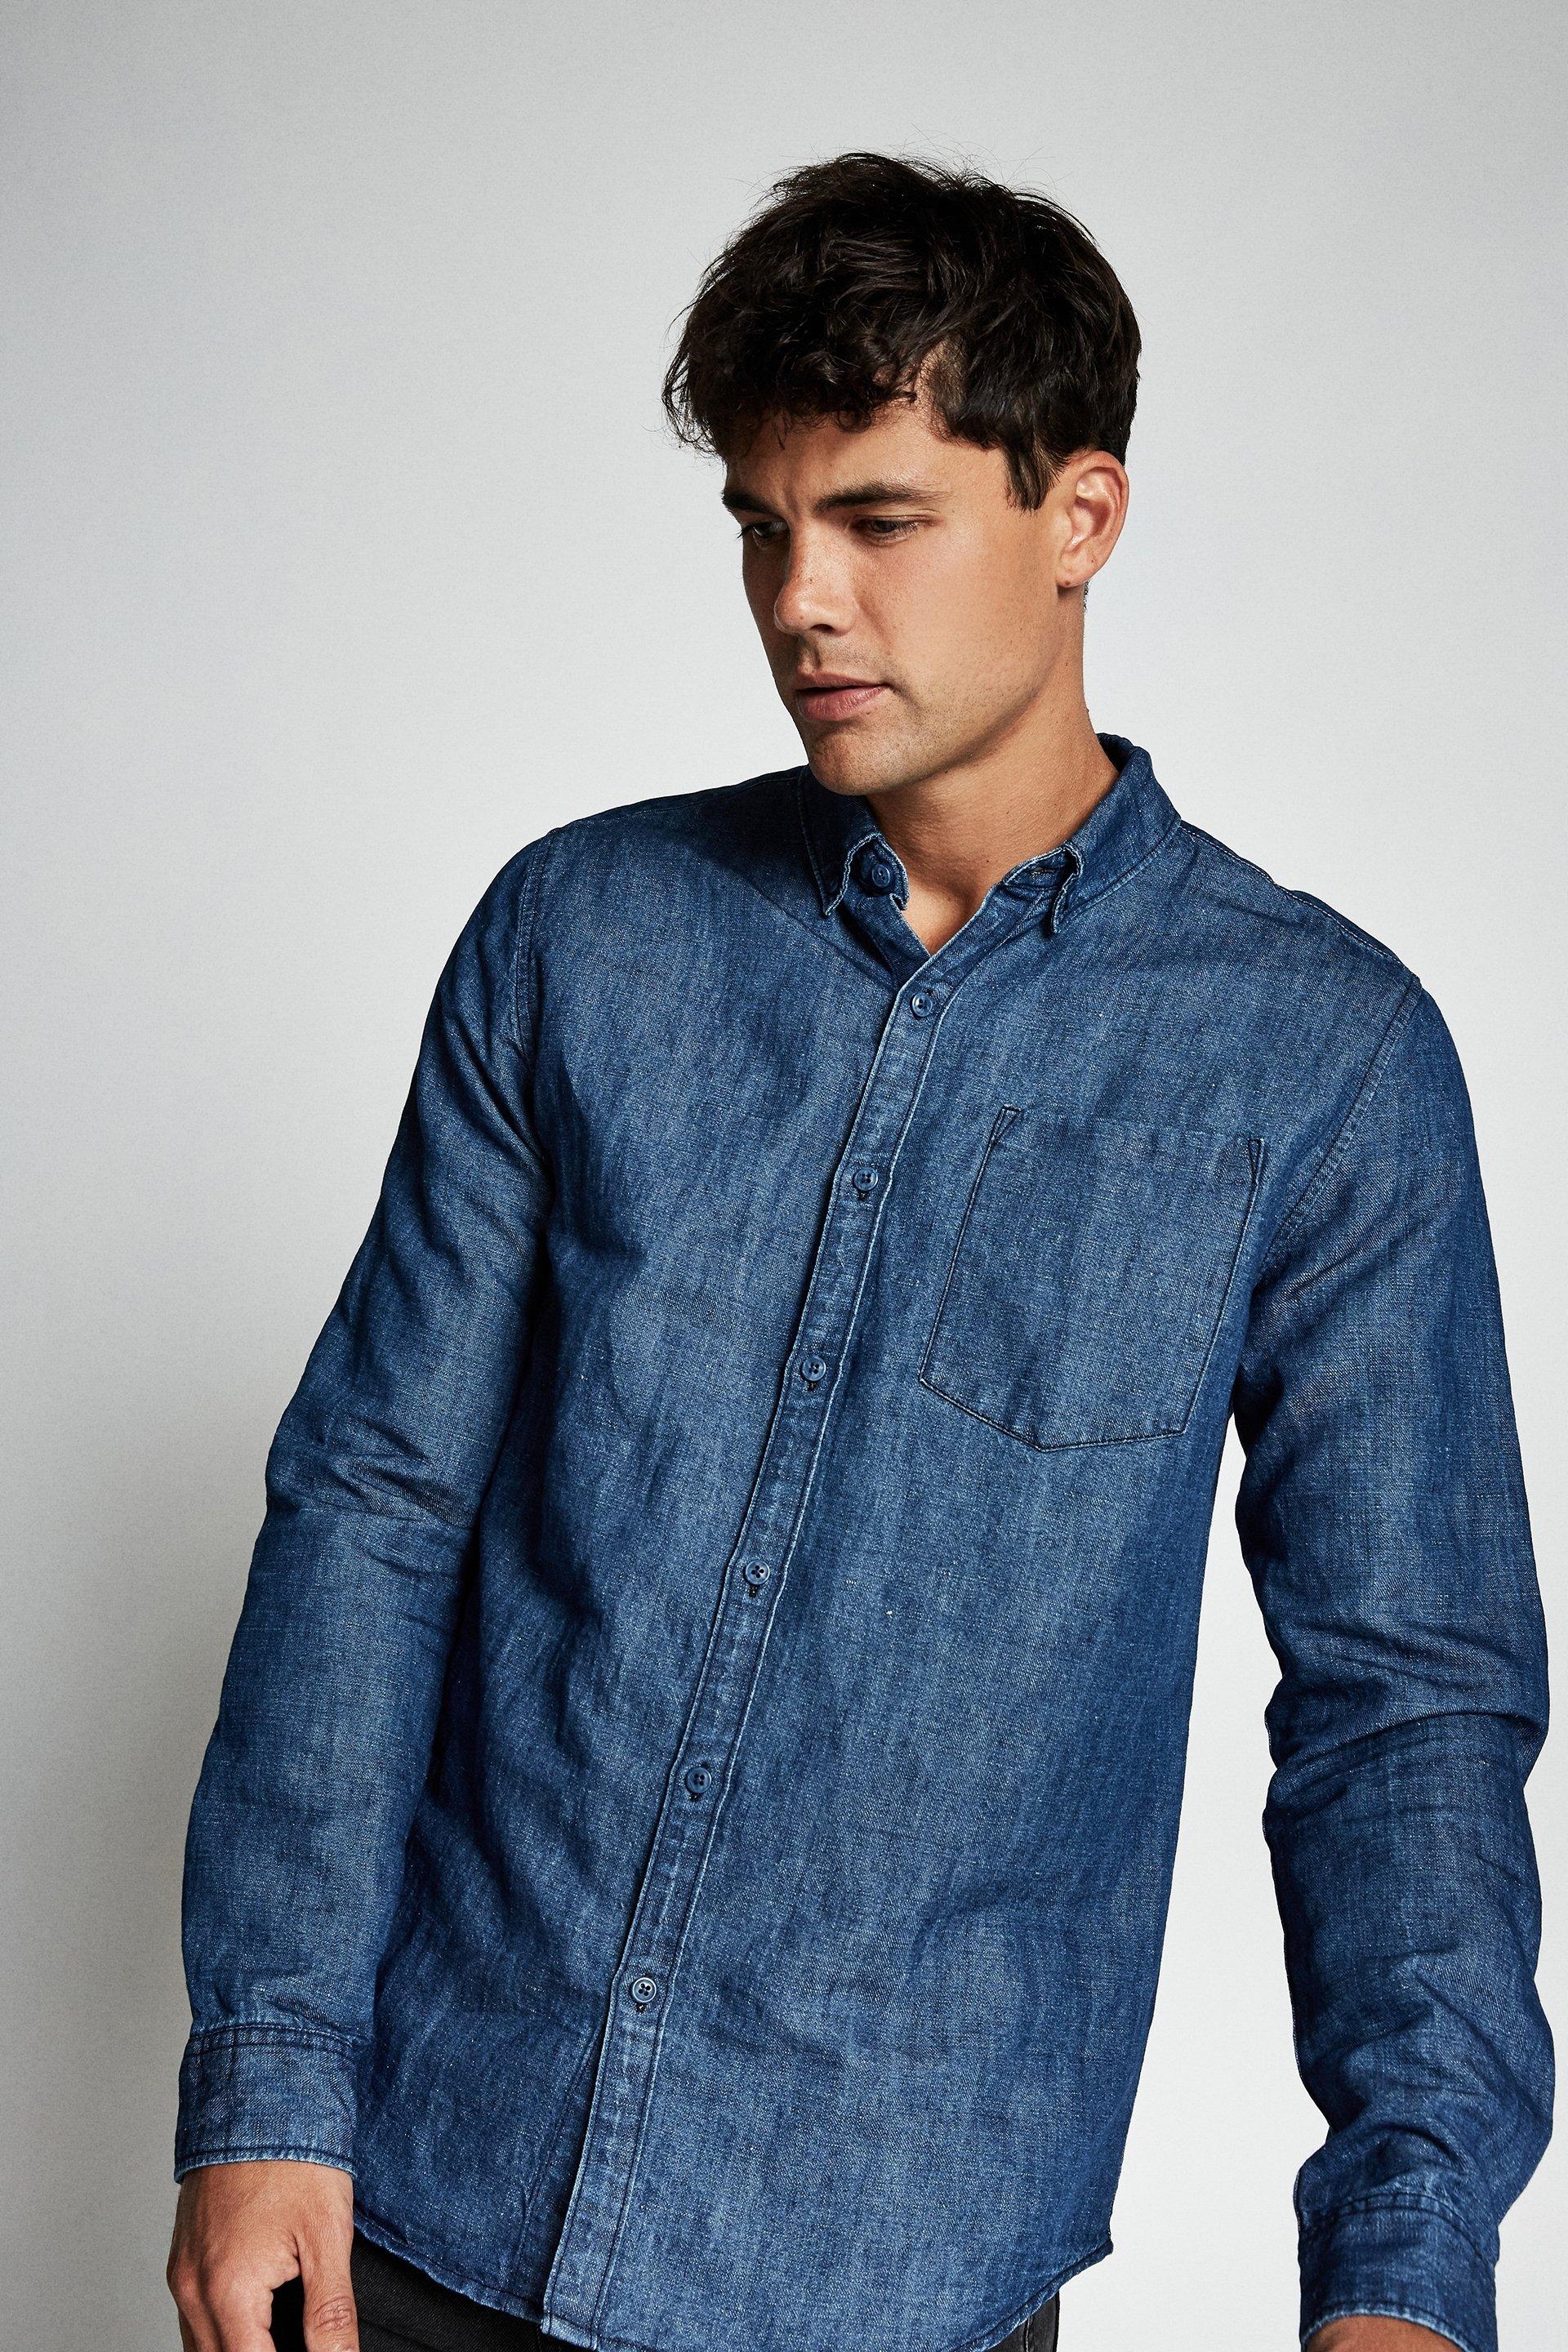 Premium denim linen shirt - dark indigo Cotton On Shirts | Superbalist.com